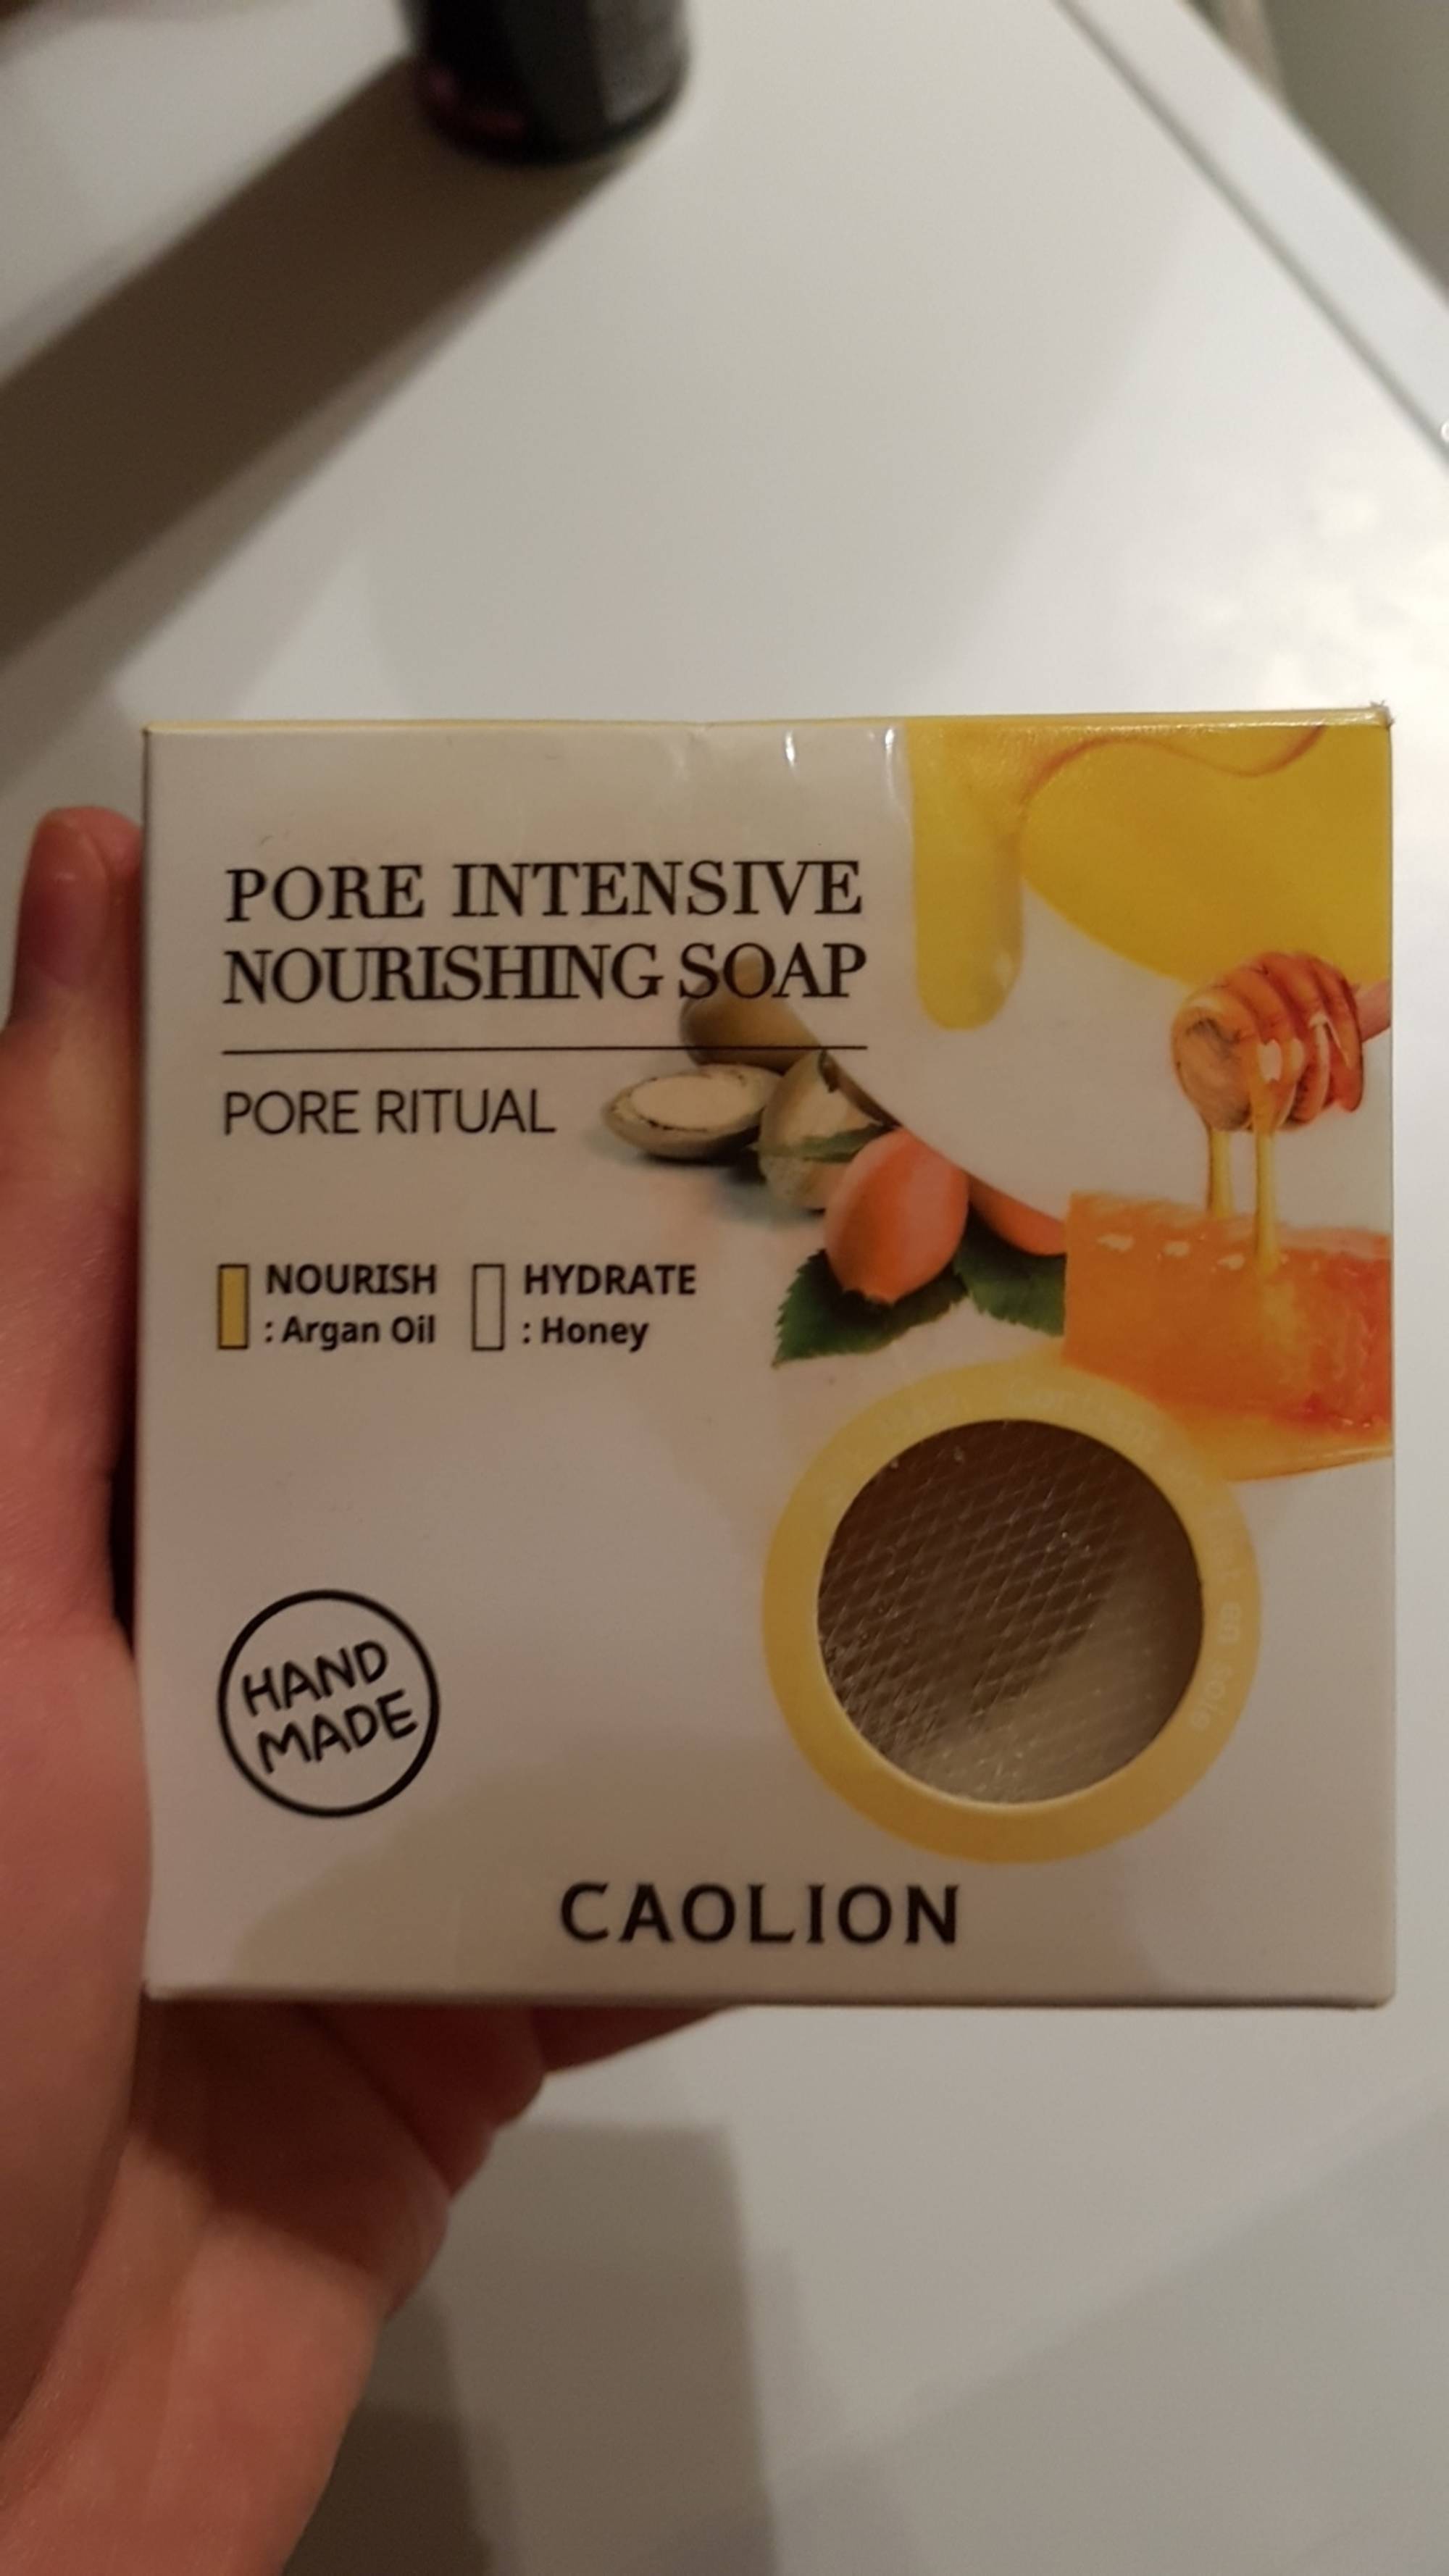 CAOLION - Pore intensive nourishing soap